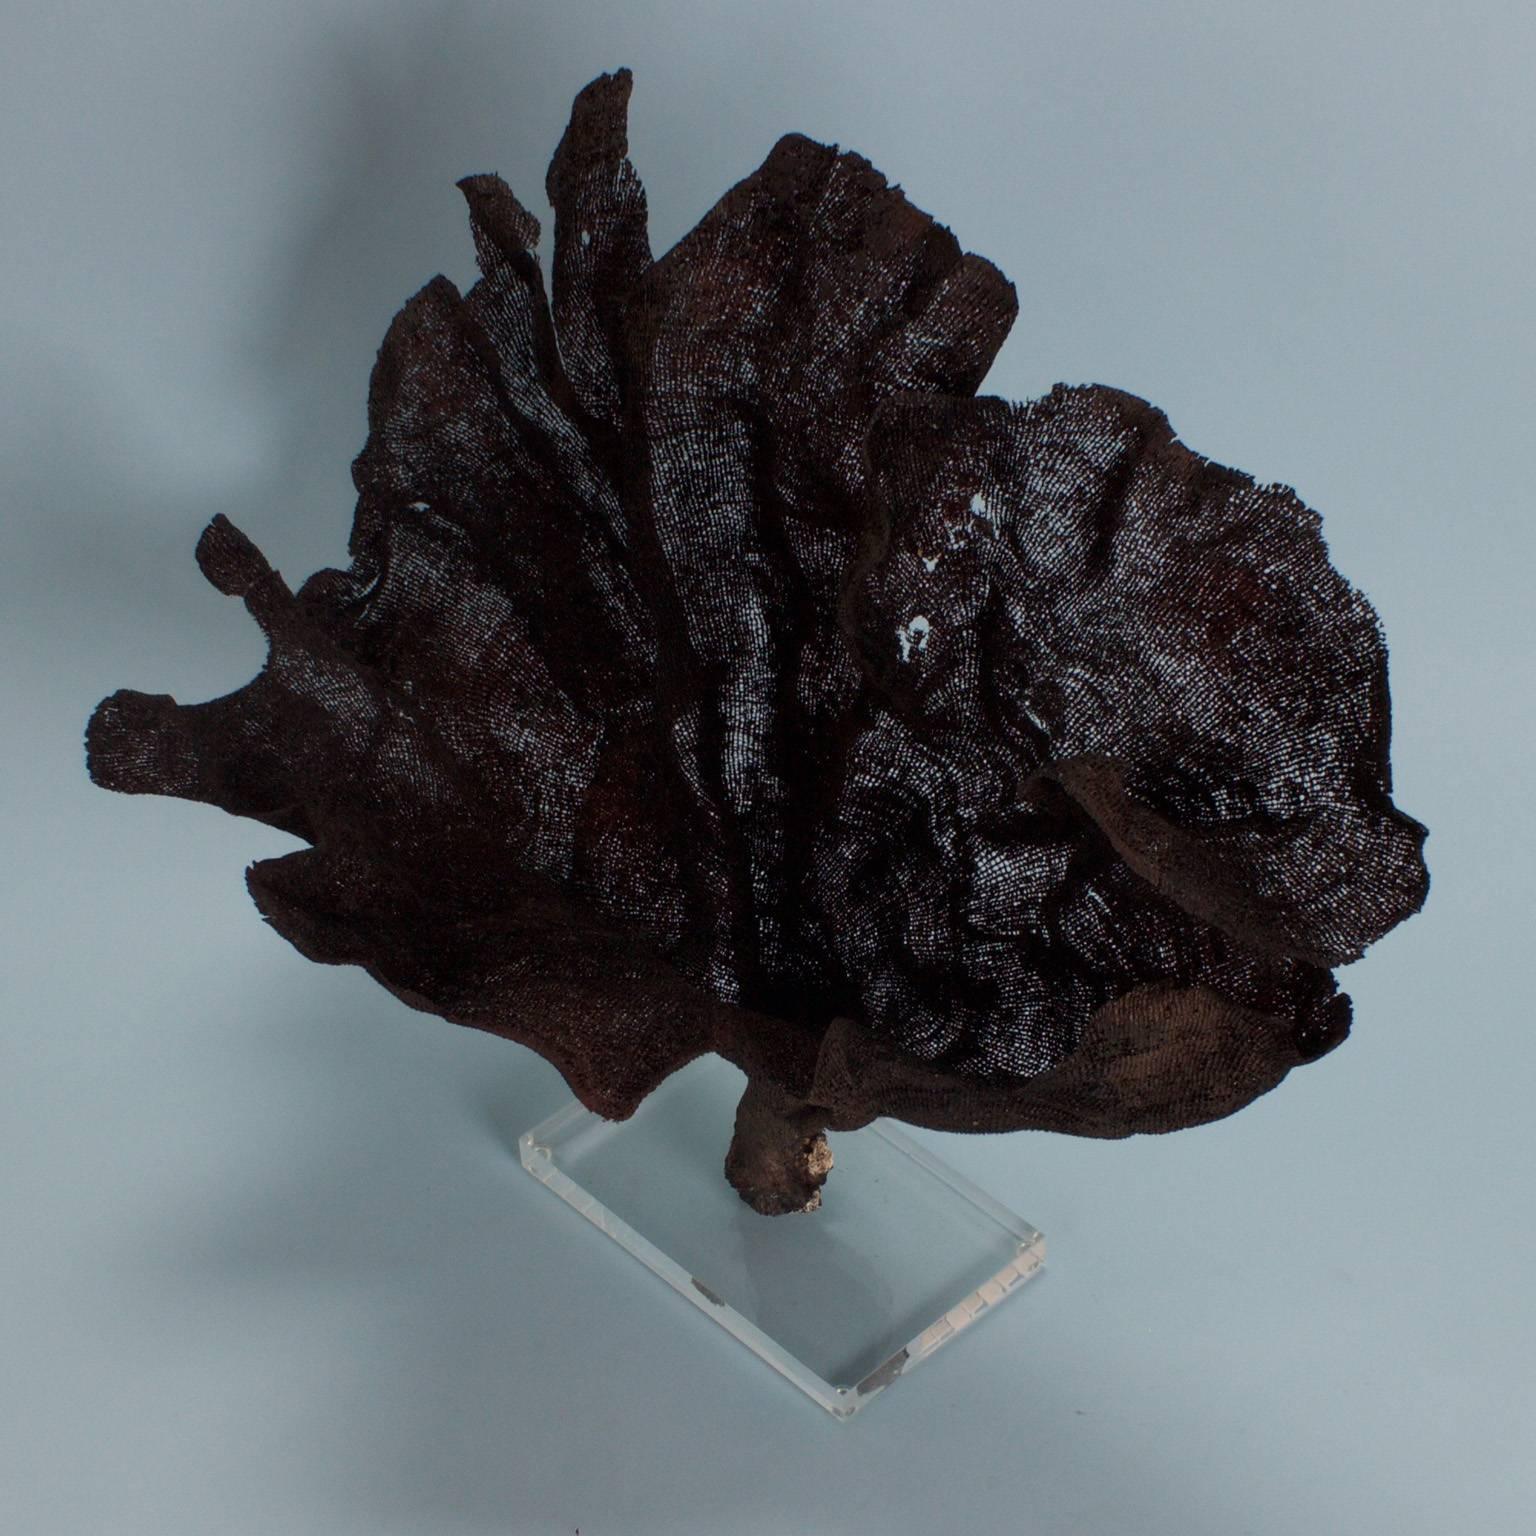 Organic Modern Intriguing Black Fishnet Sponge on Lucite